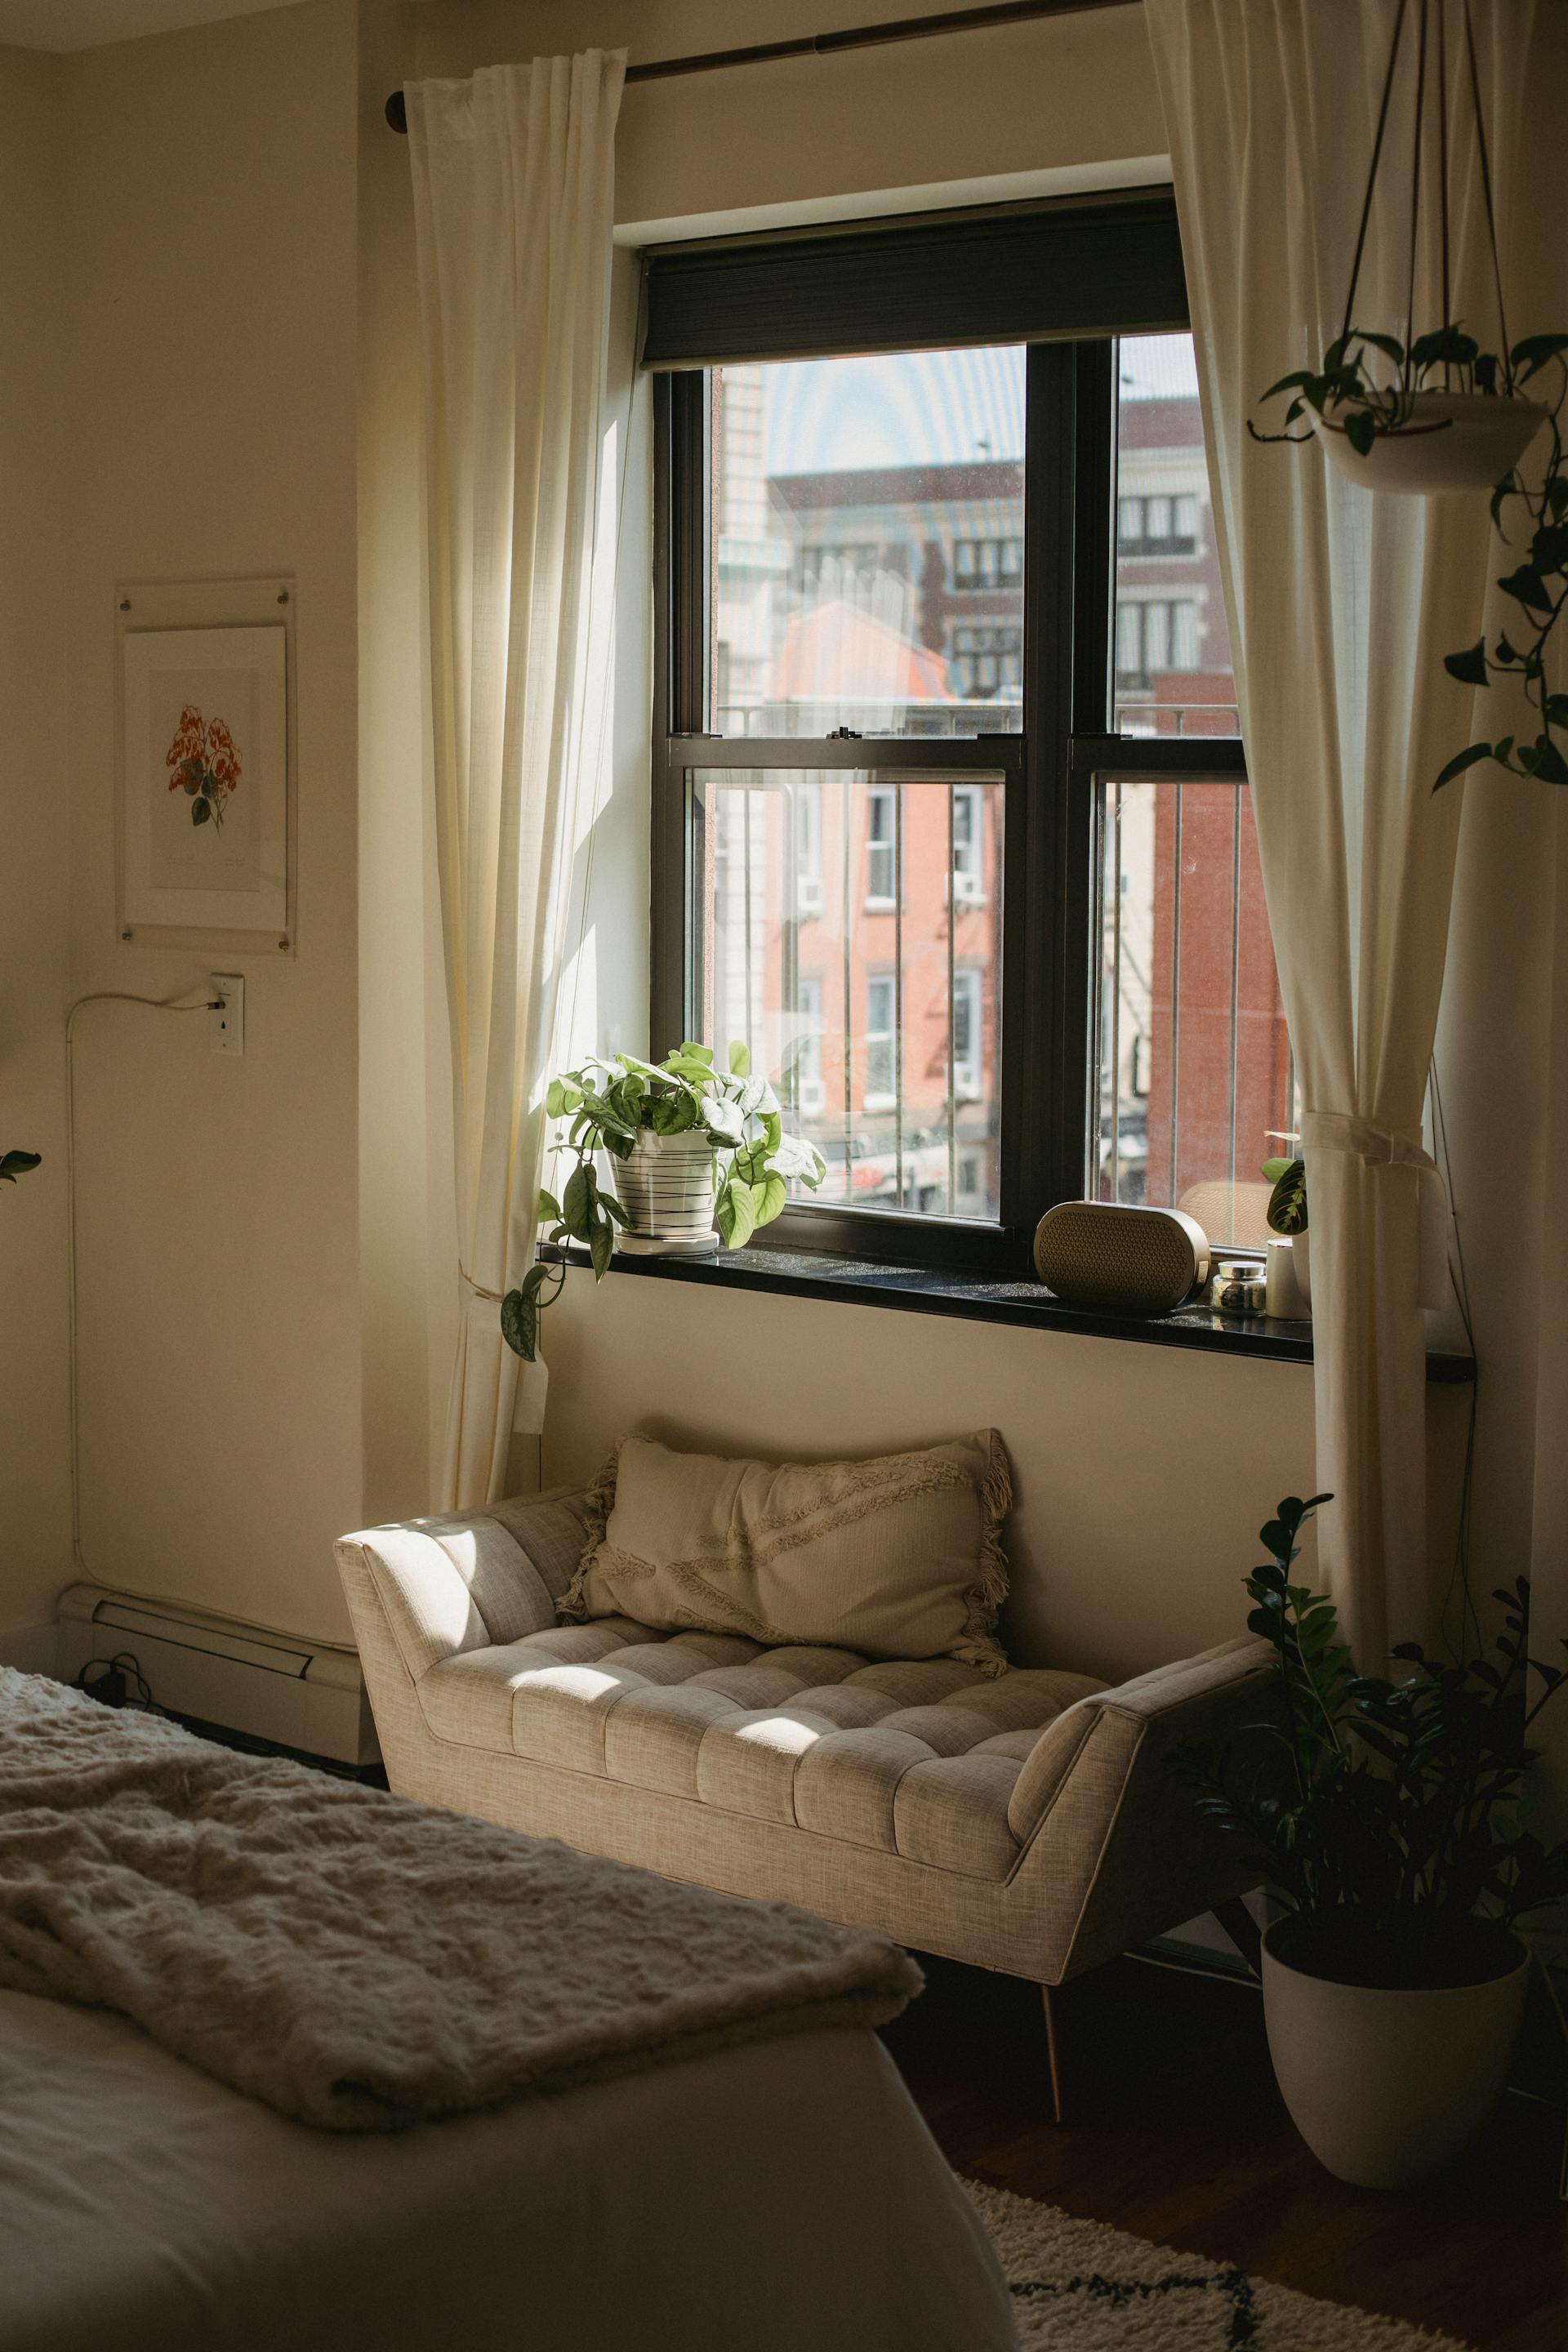 Una vista más cercana de una ventana en un dormitorio | Fuente: Pexels